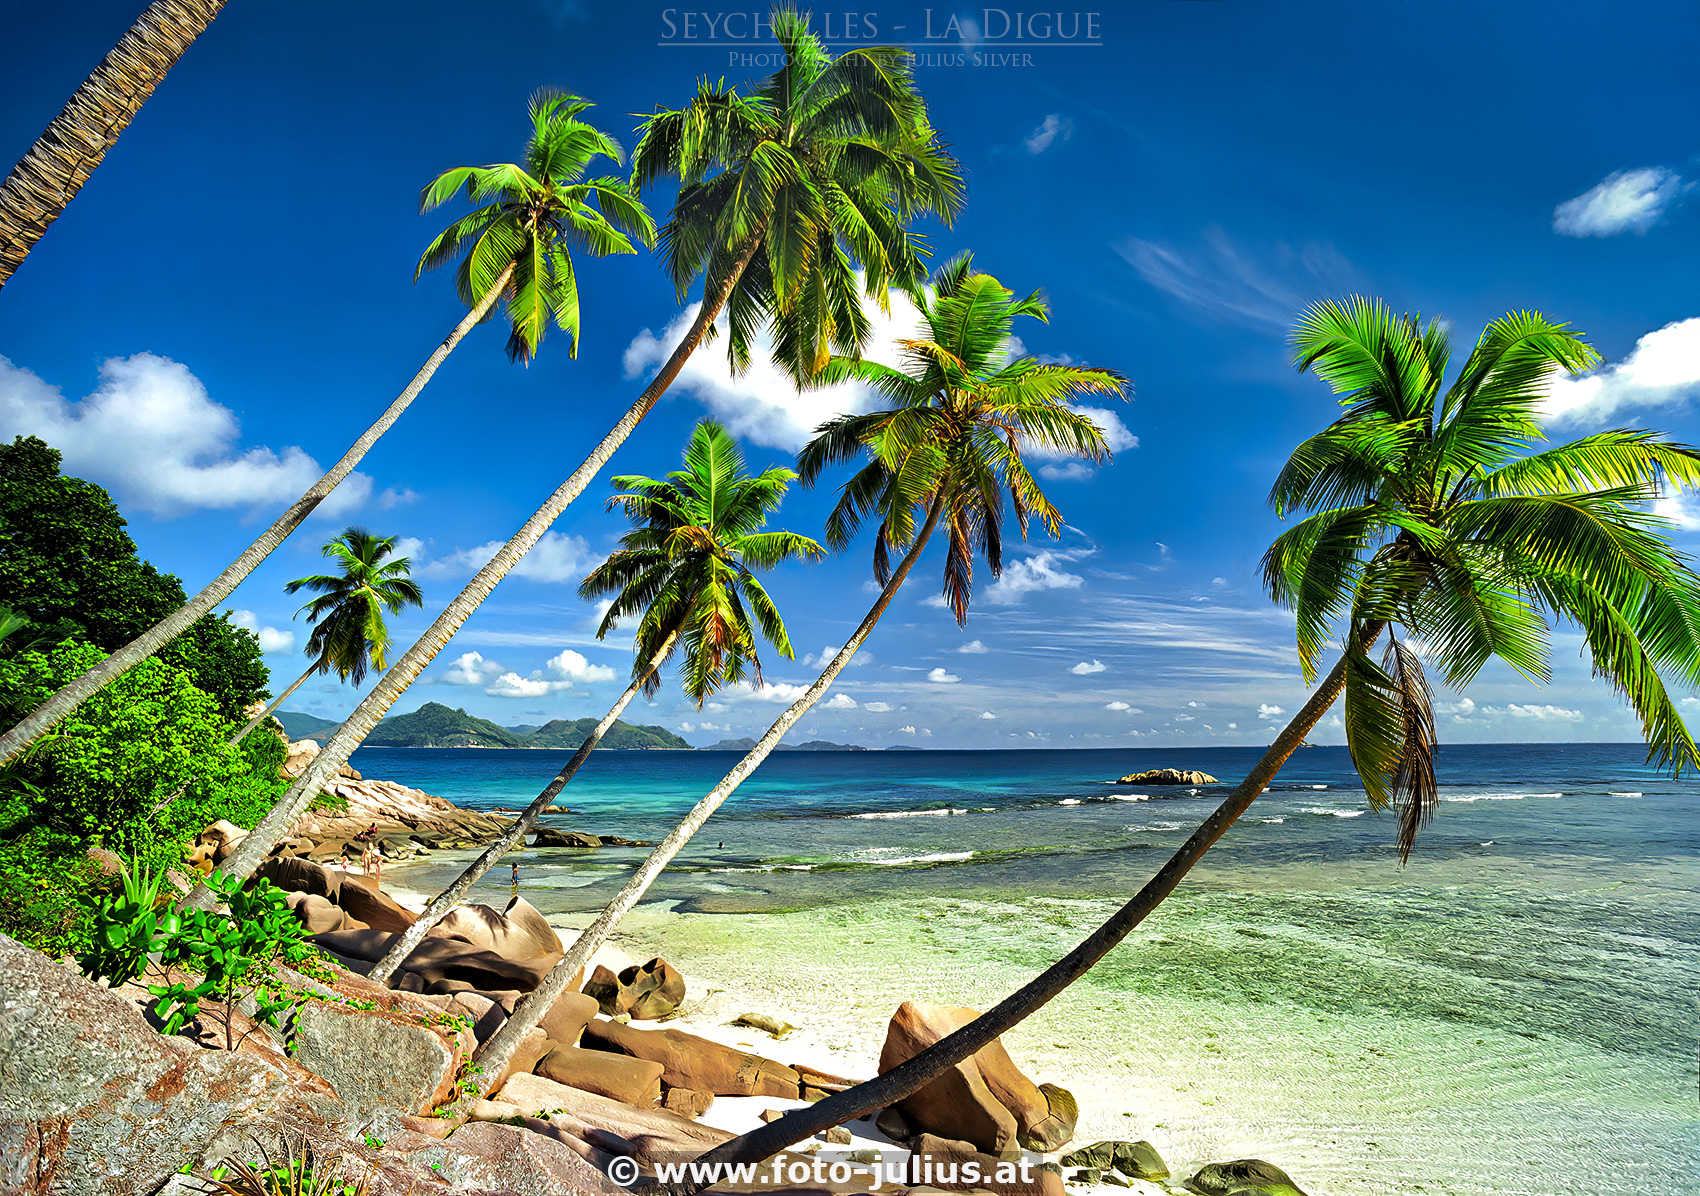 Seychelles_001a_La_Digue.jpg, 1,4MB